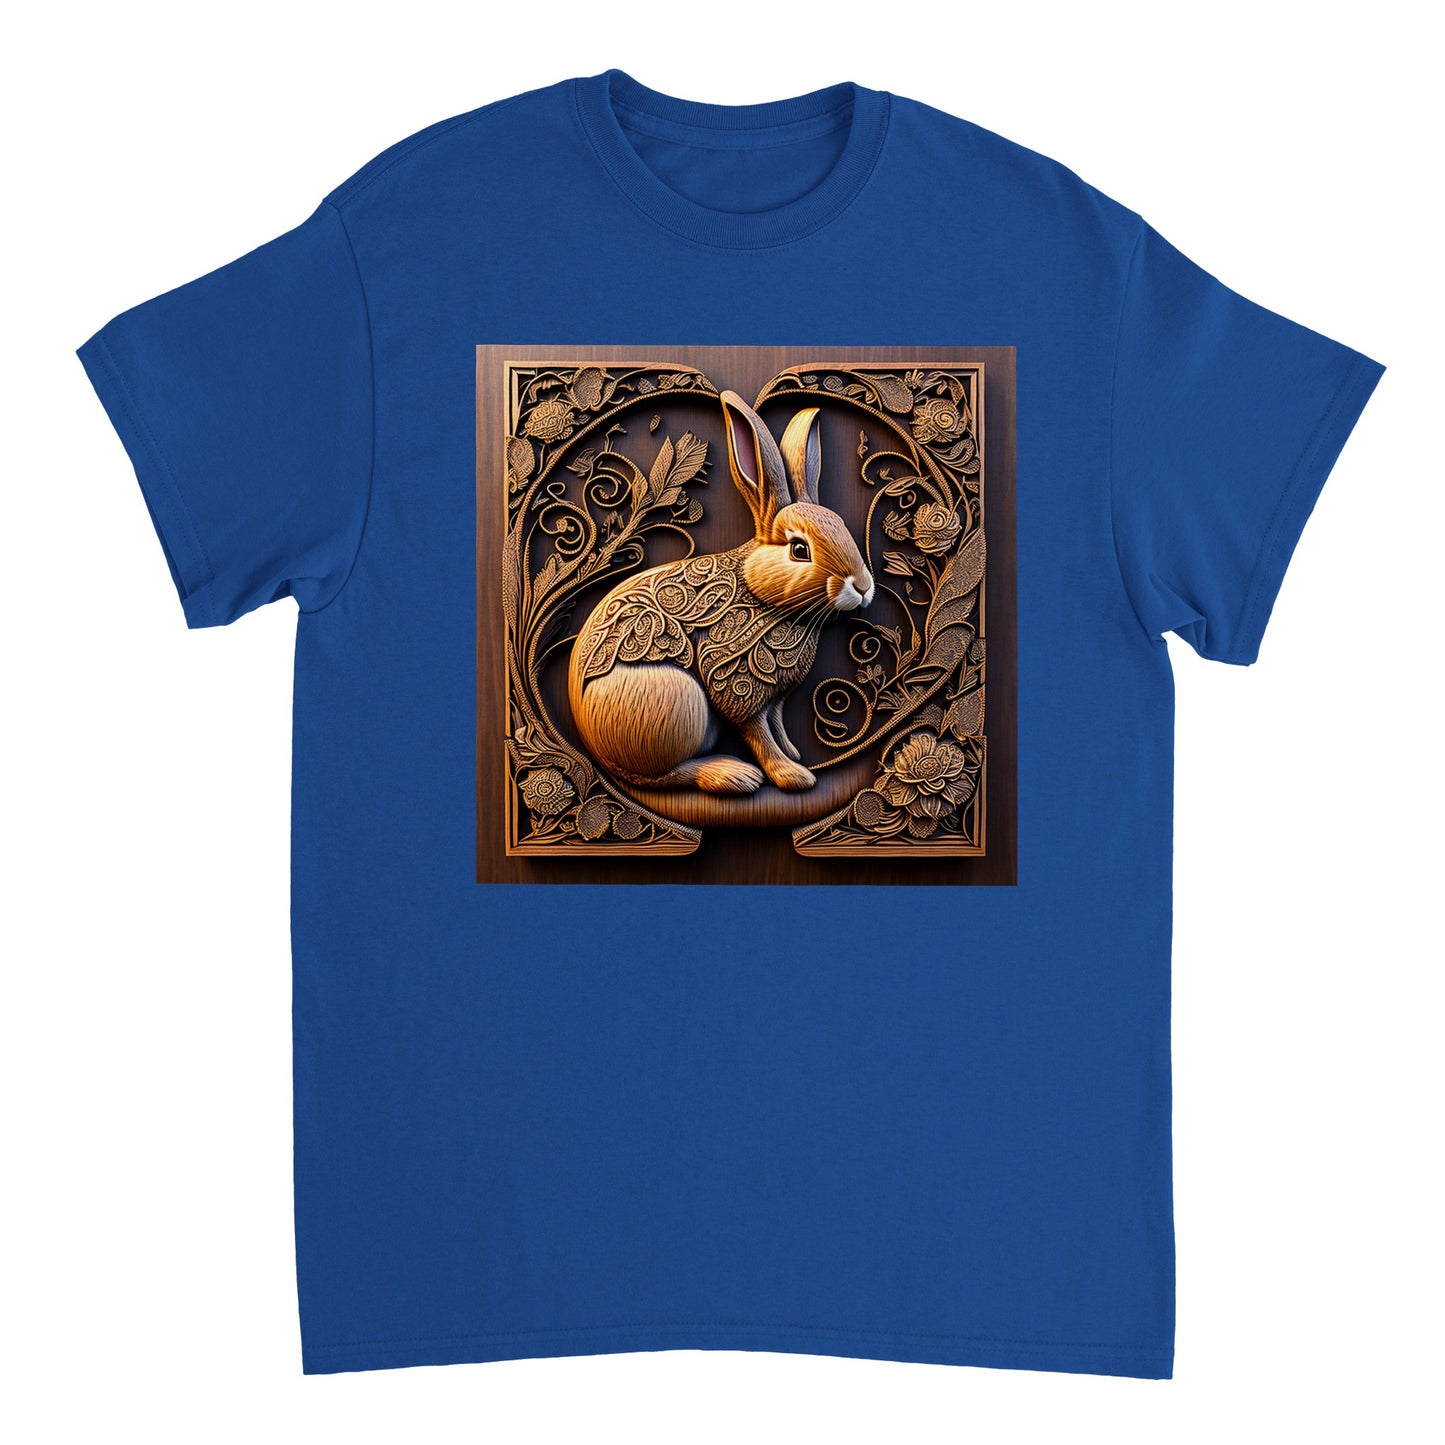 3D Wooden Animal Art - Heavyweight Unisex Crewneck T-shirt 58